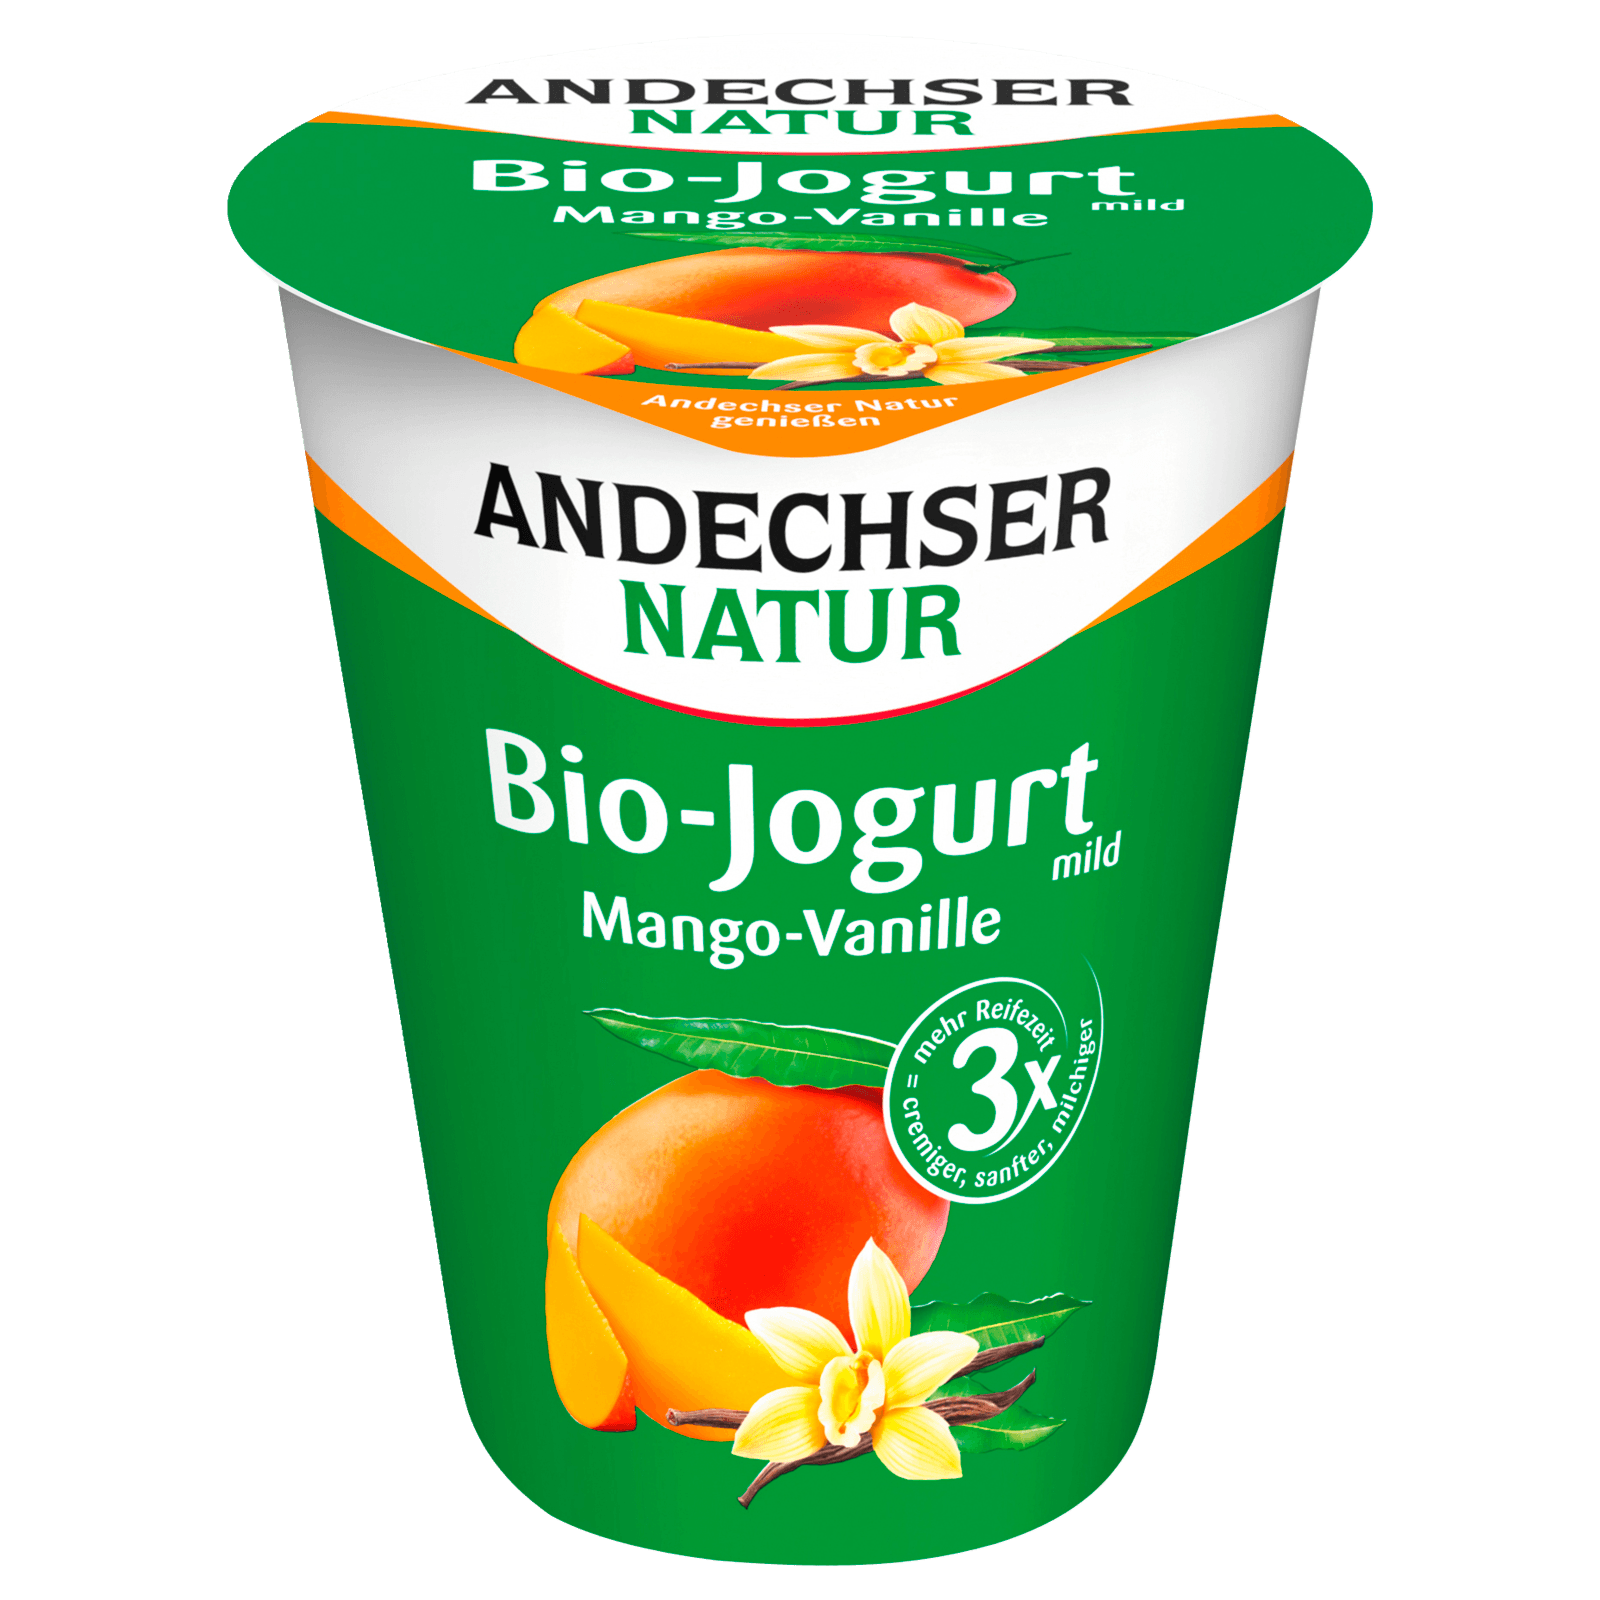 Andechser Natur Bio-Jogurt mild Mango-Vanille 400g